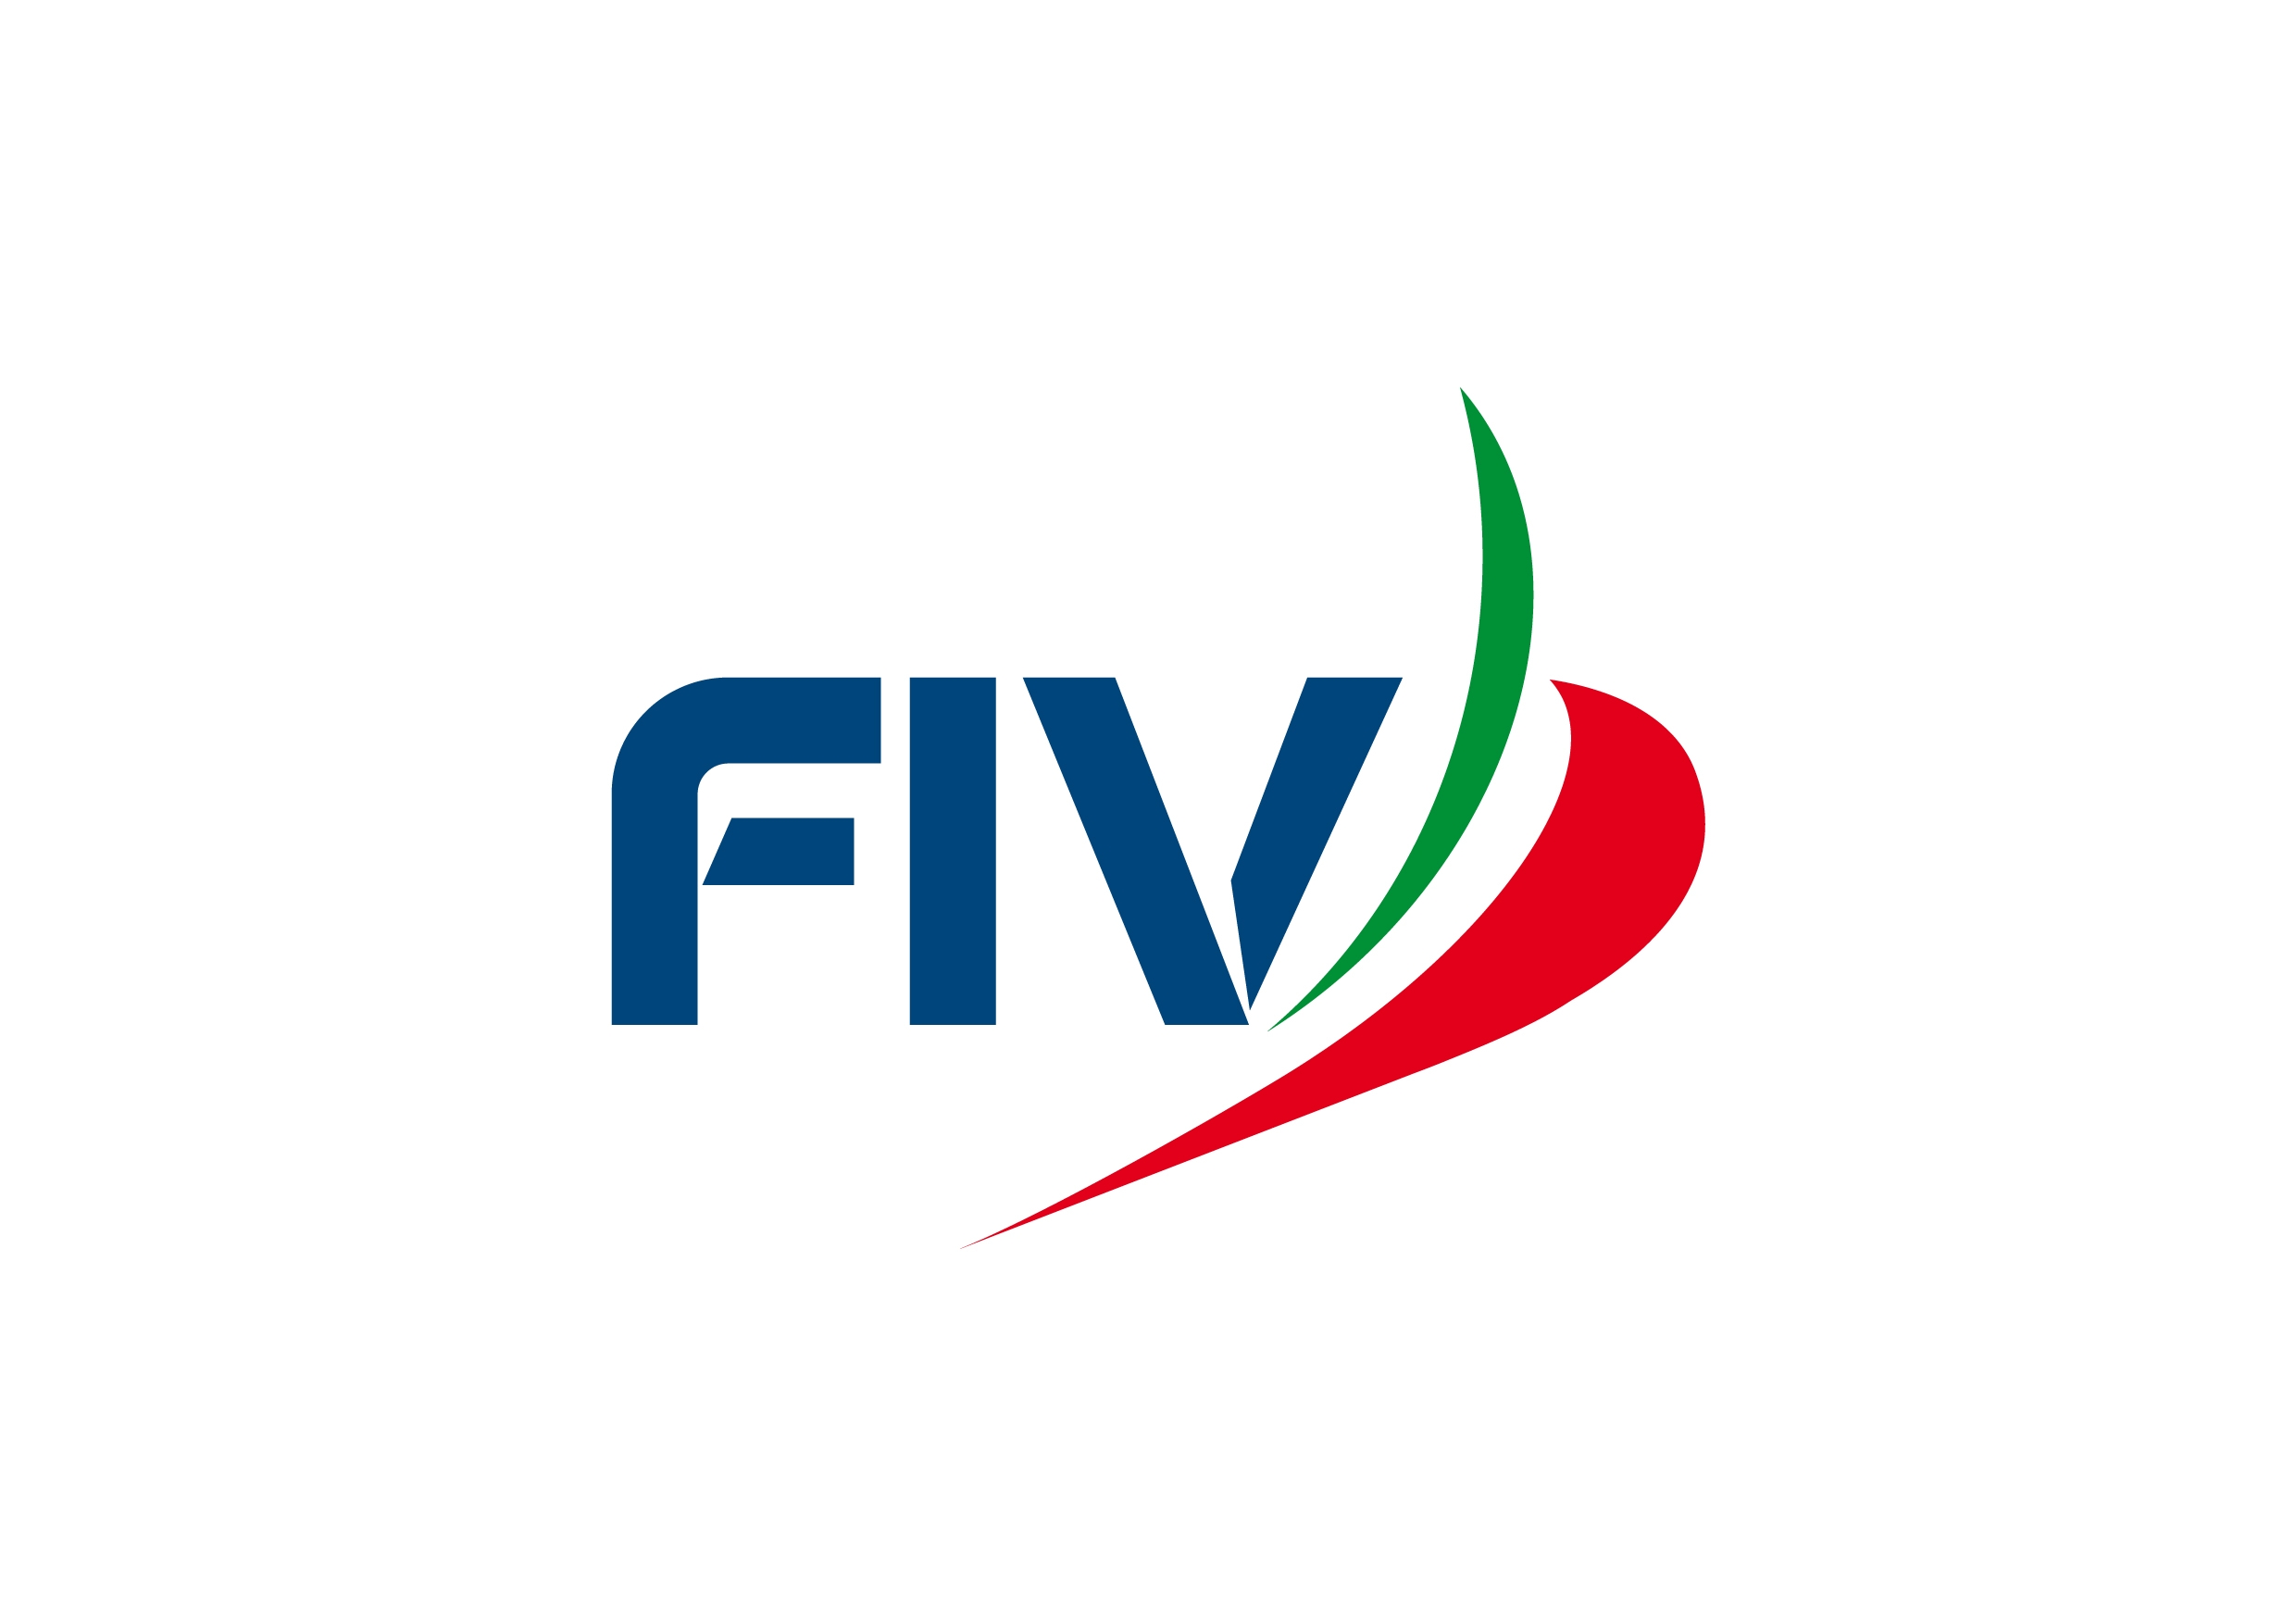 images/fiv/fiv_logo_22.jpg